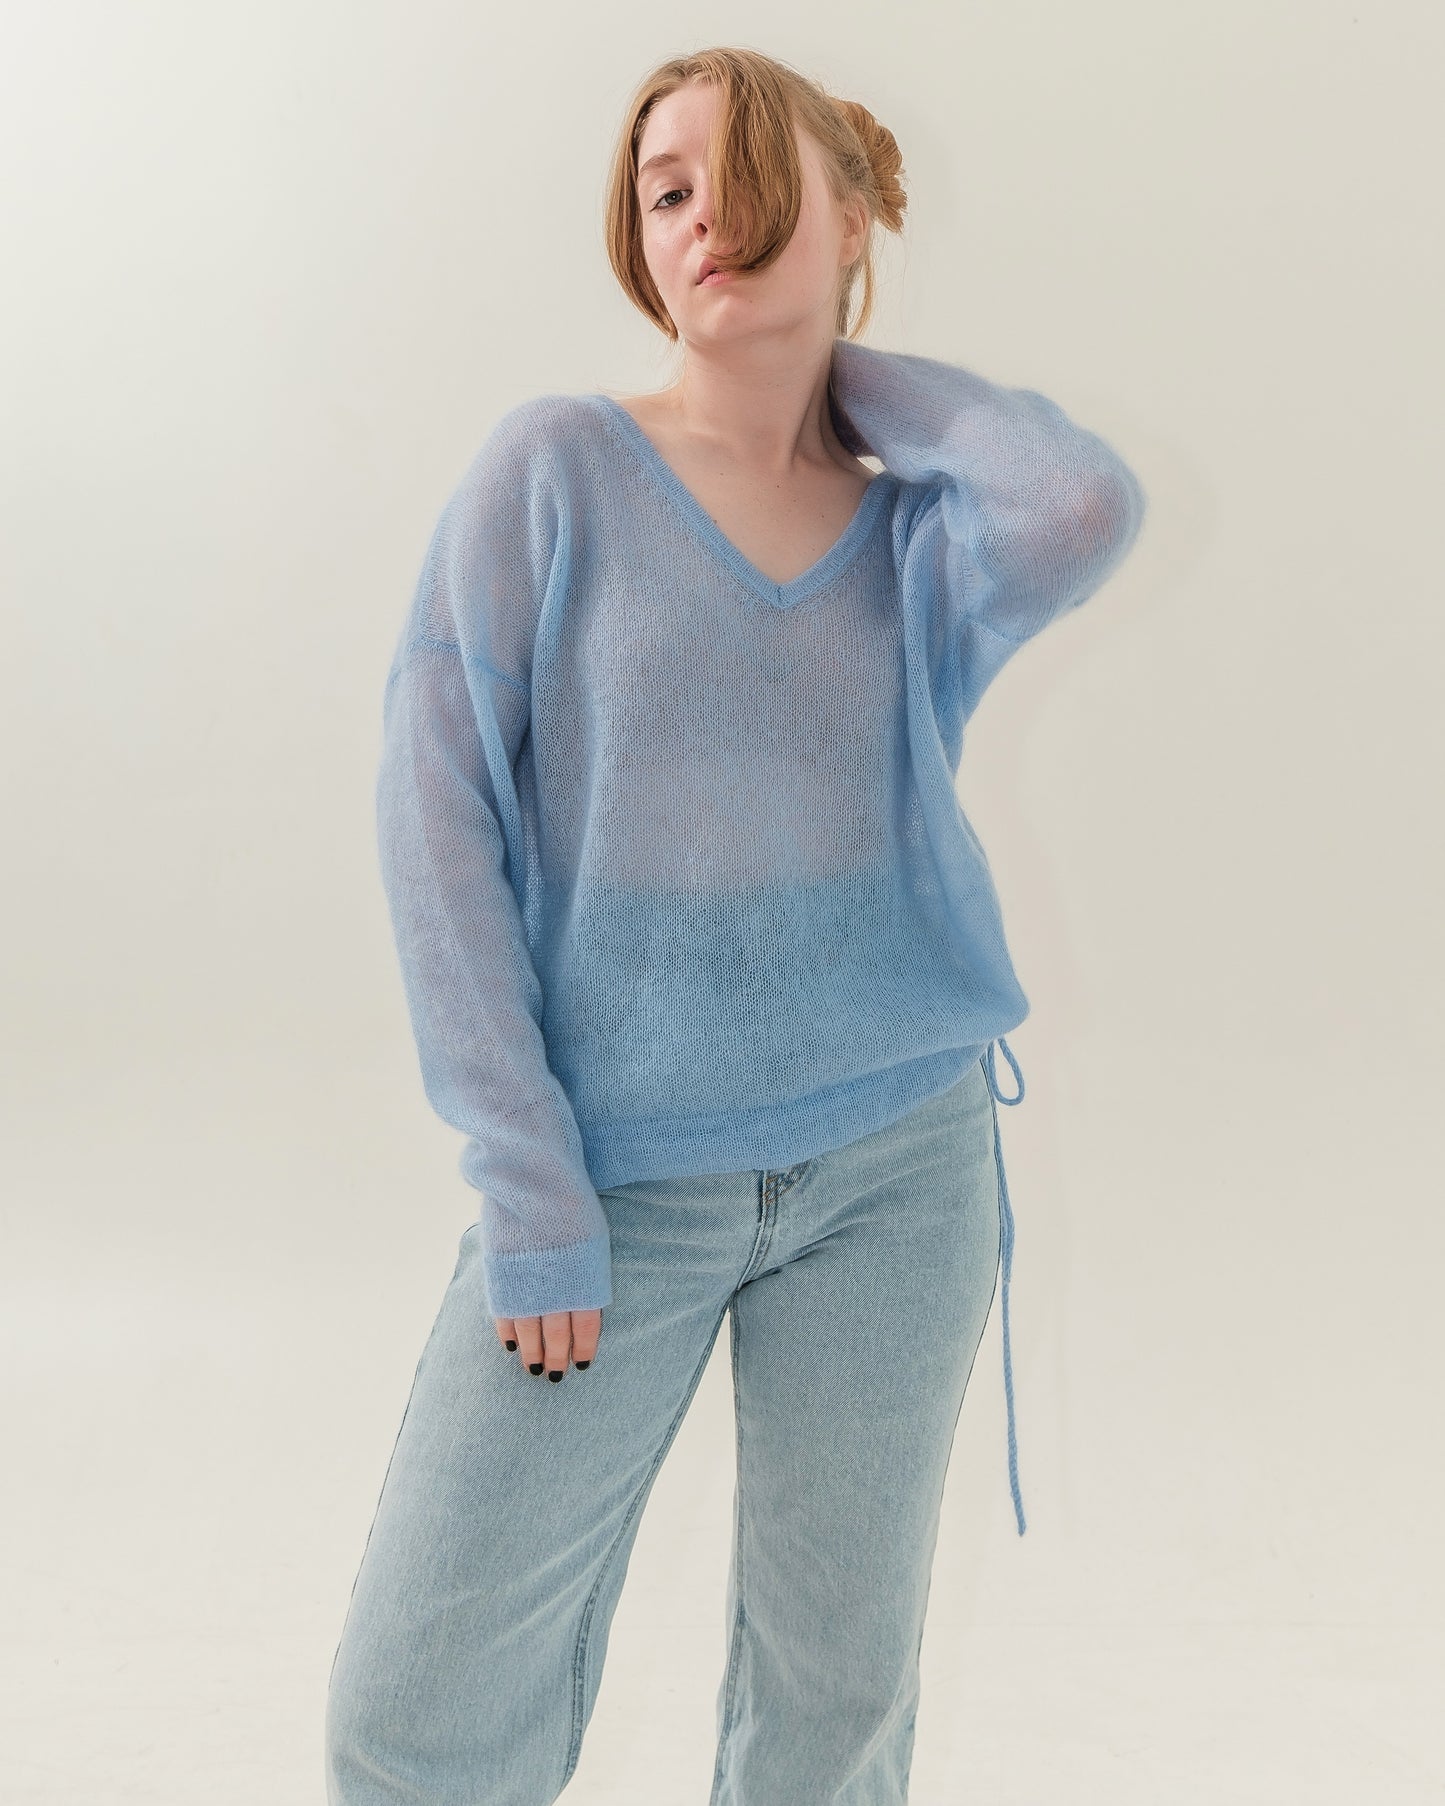 Lightweight sweater in sky blue